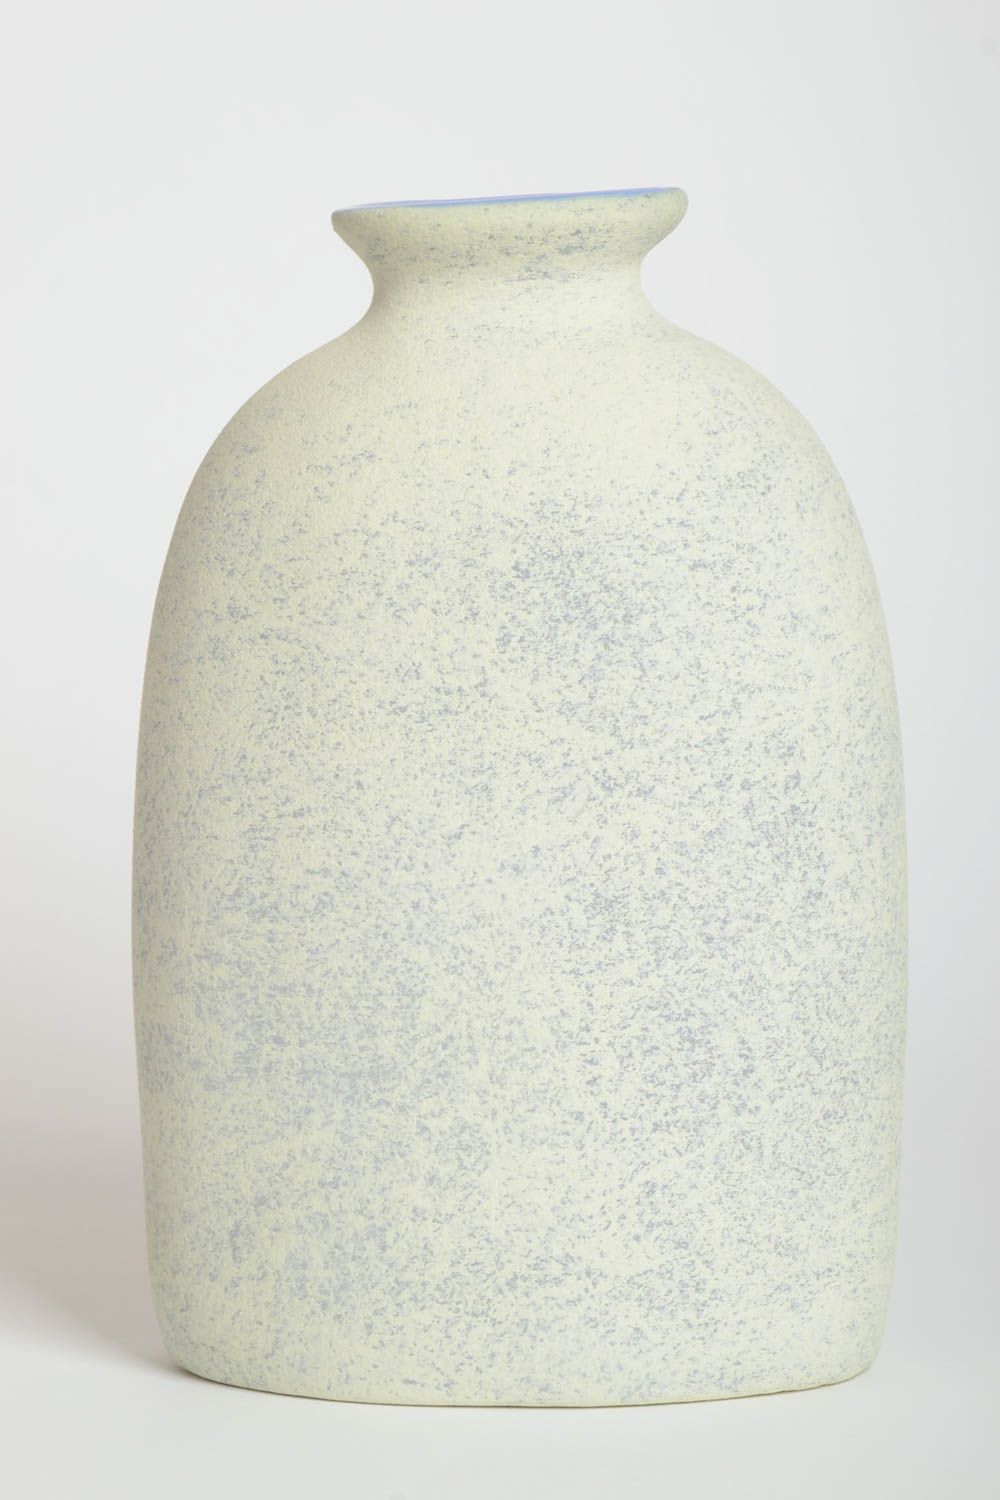 9 inches ceramic handmade art vase for flowers 2 lb photo 4